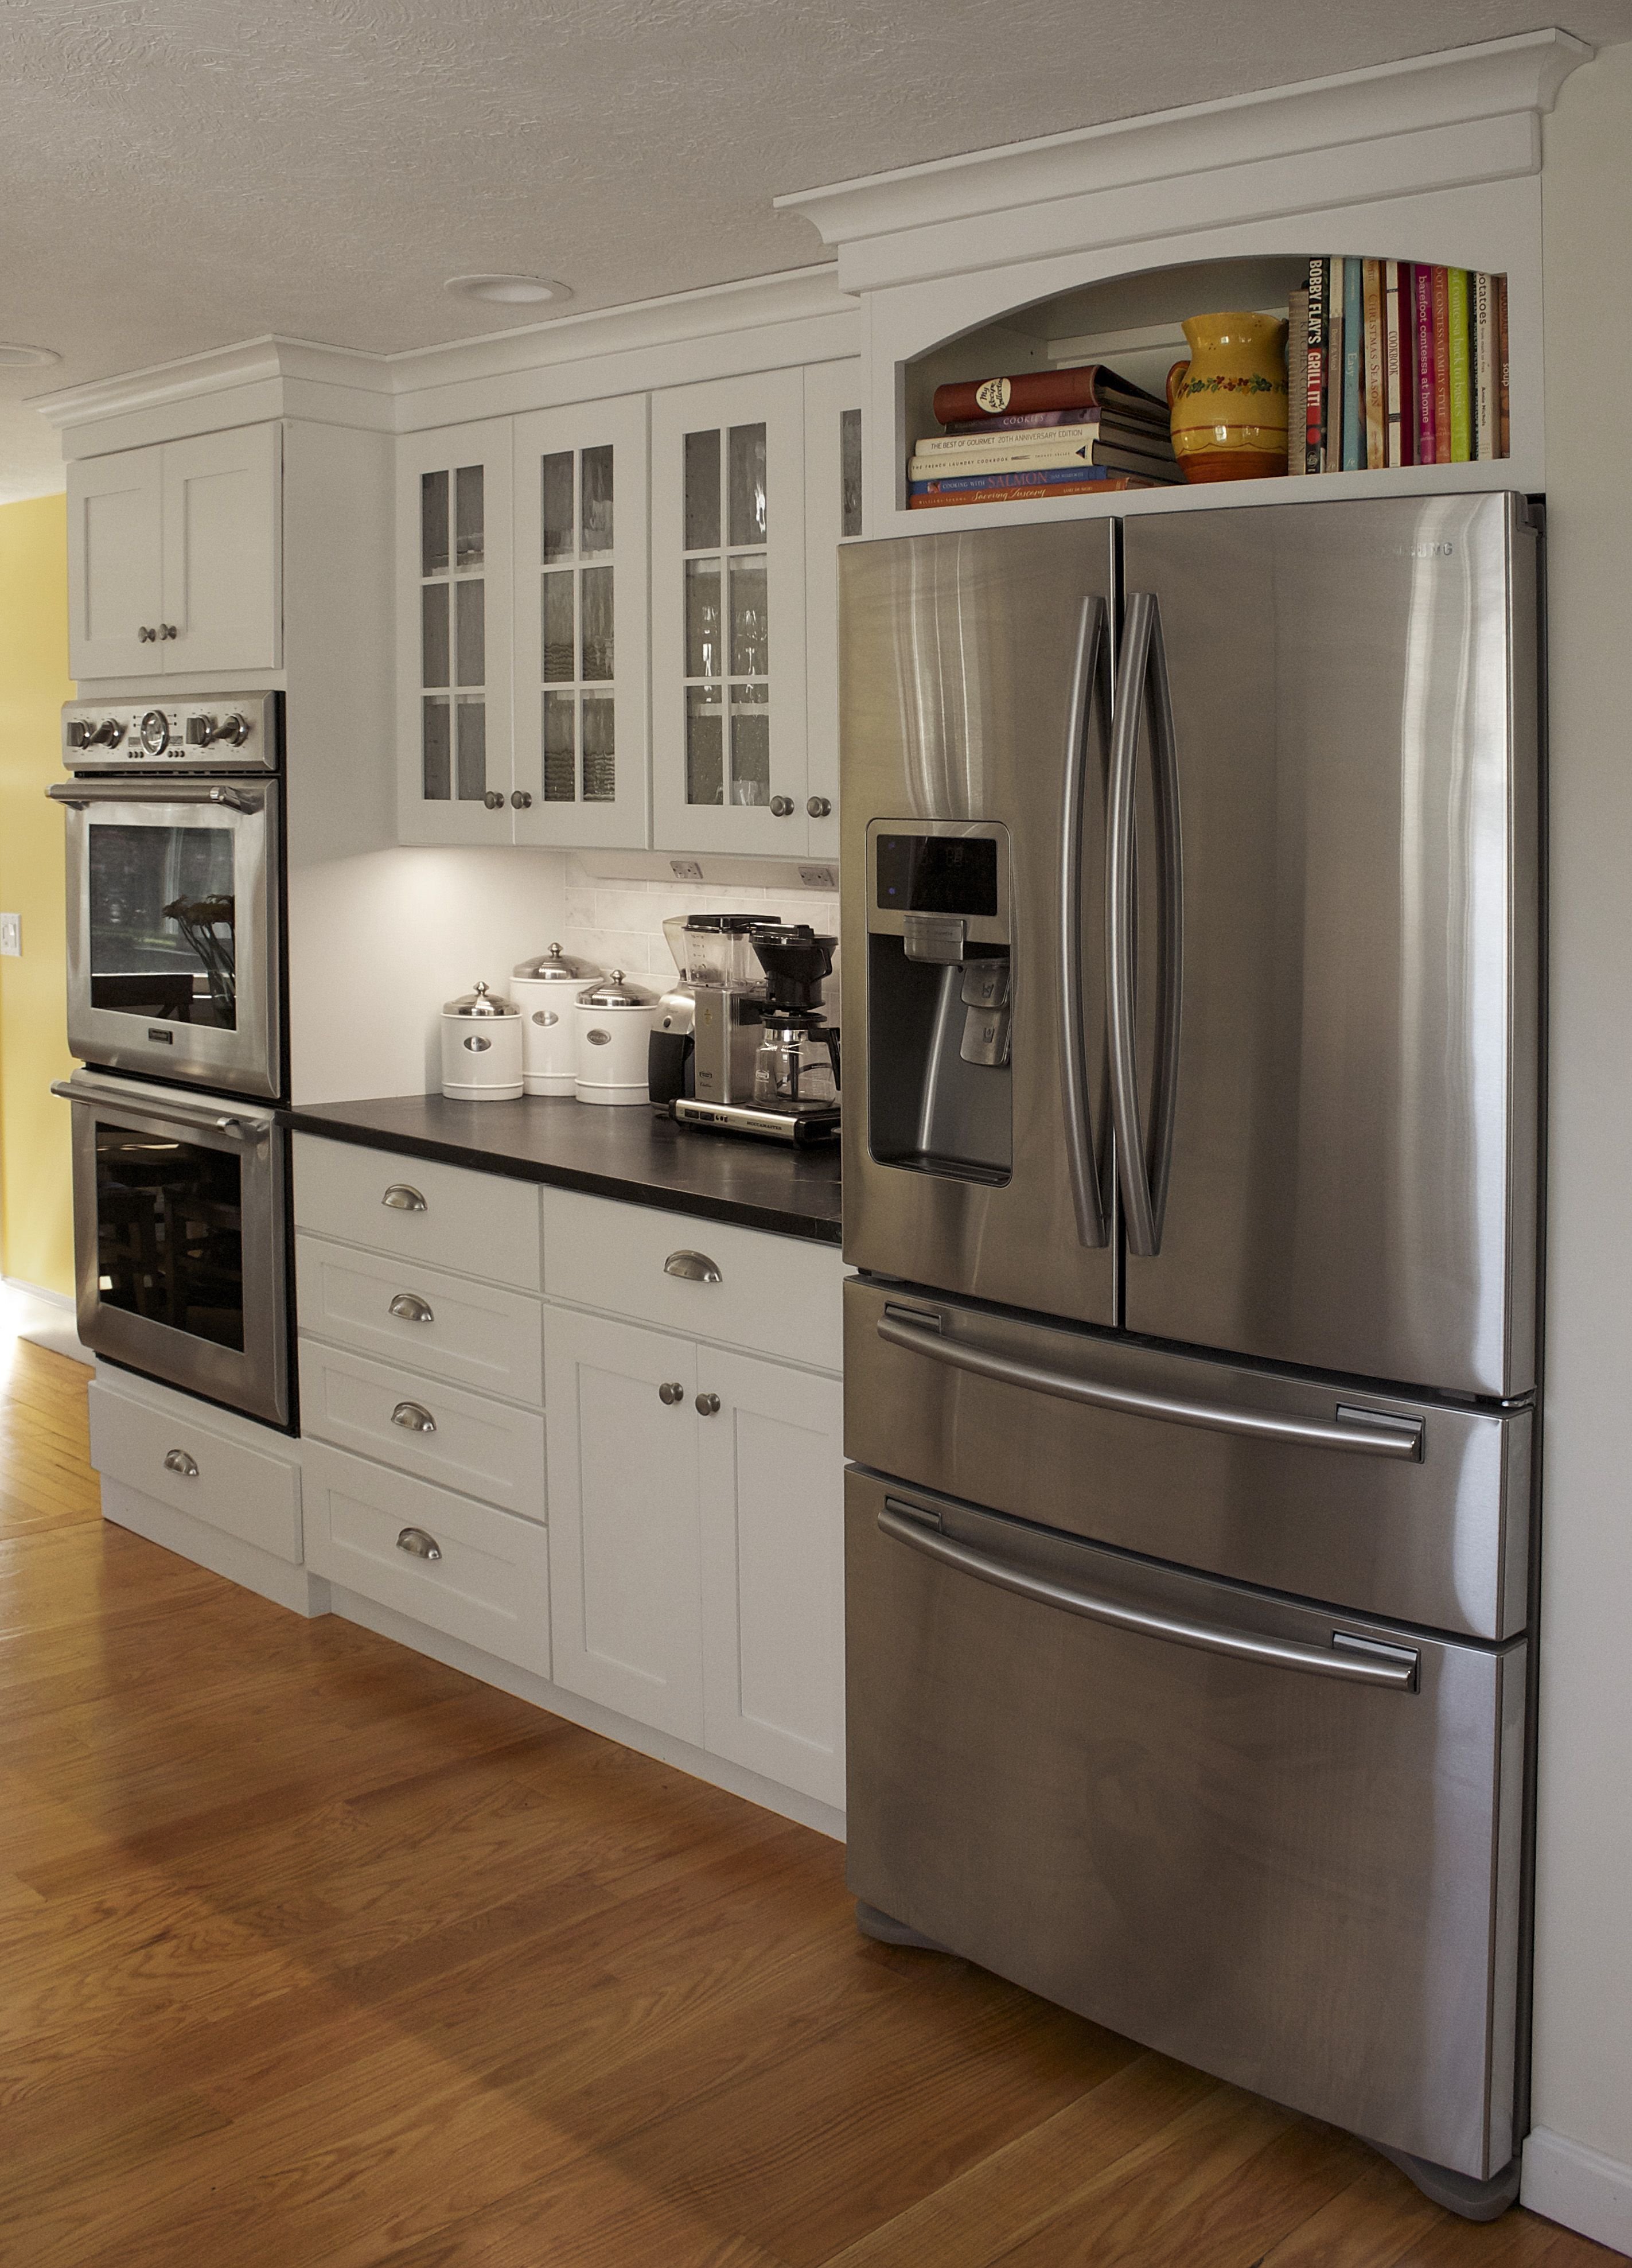 Дизайн кухни встроенной техникой. Холодильник на кухне. Холодильник в интерьере кухни. Кухня с большим холодильником. Кухня с отдельностоящим холодильником.